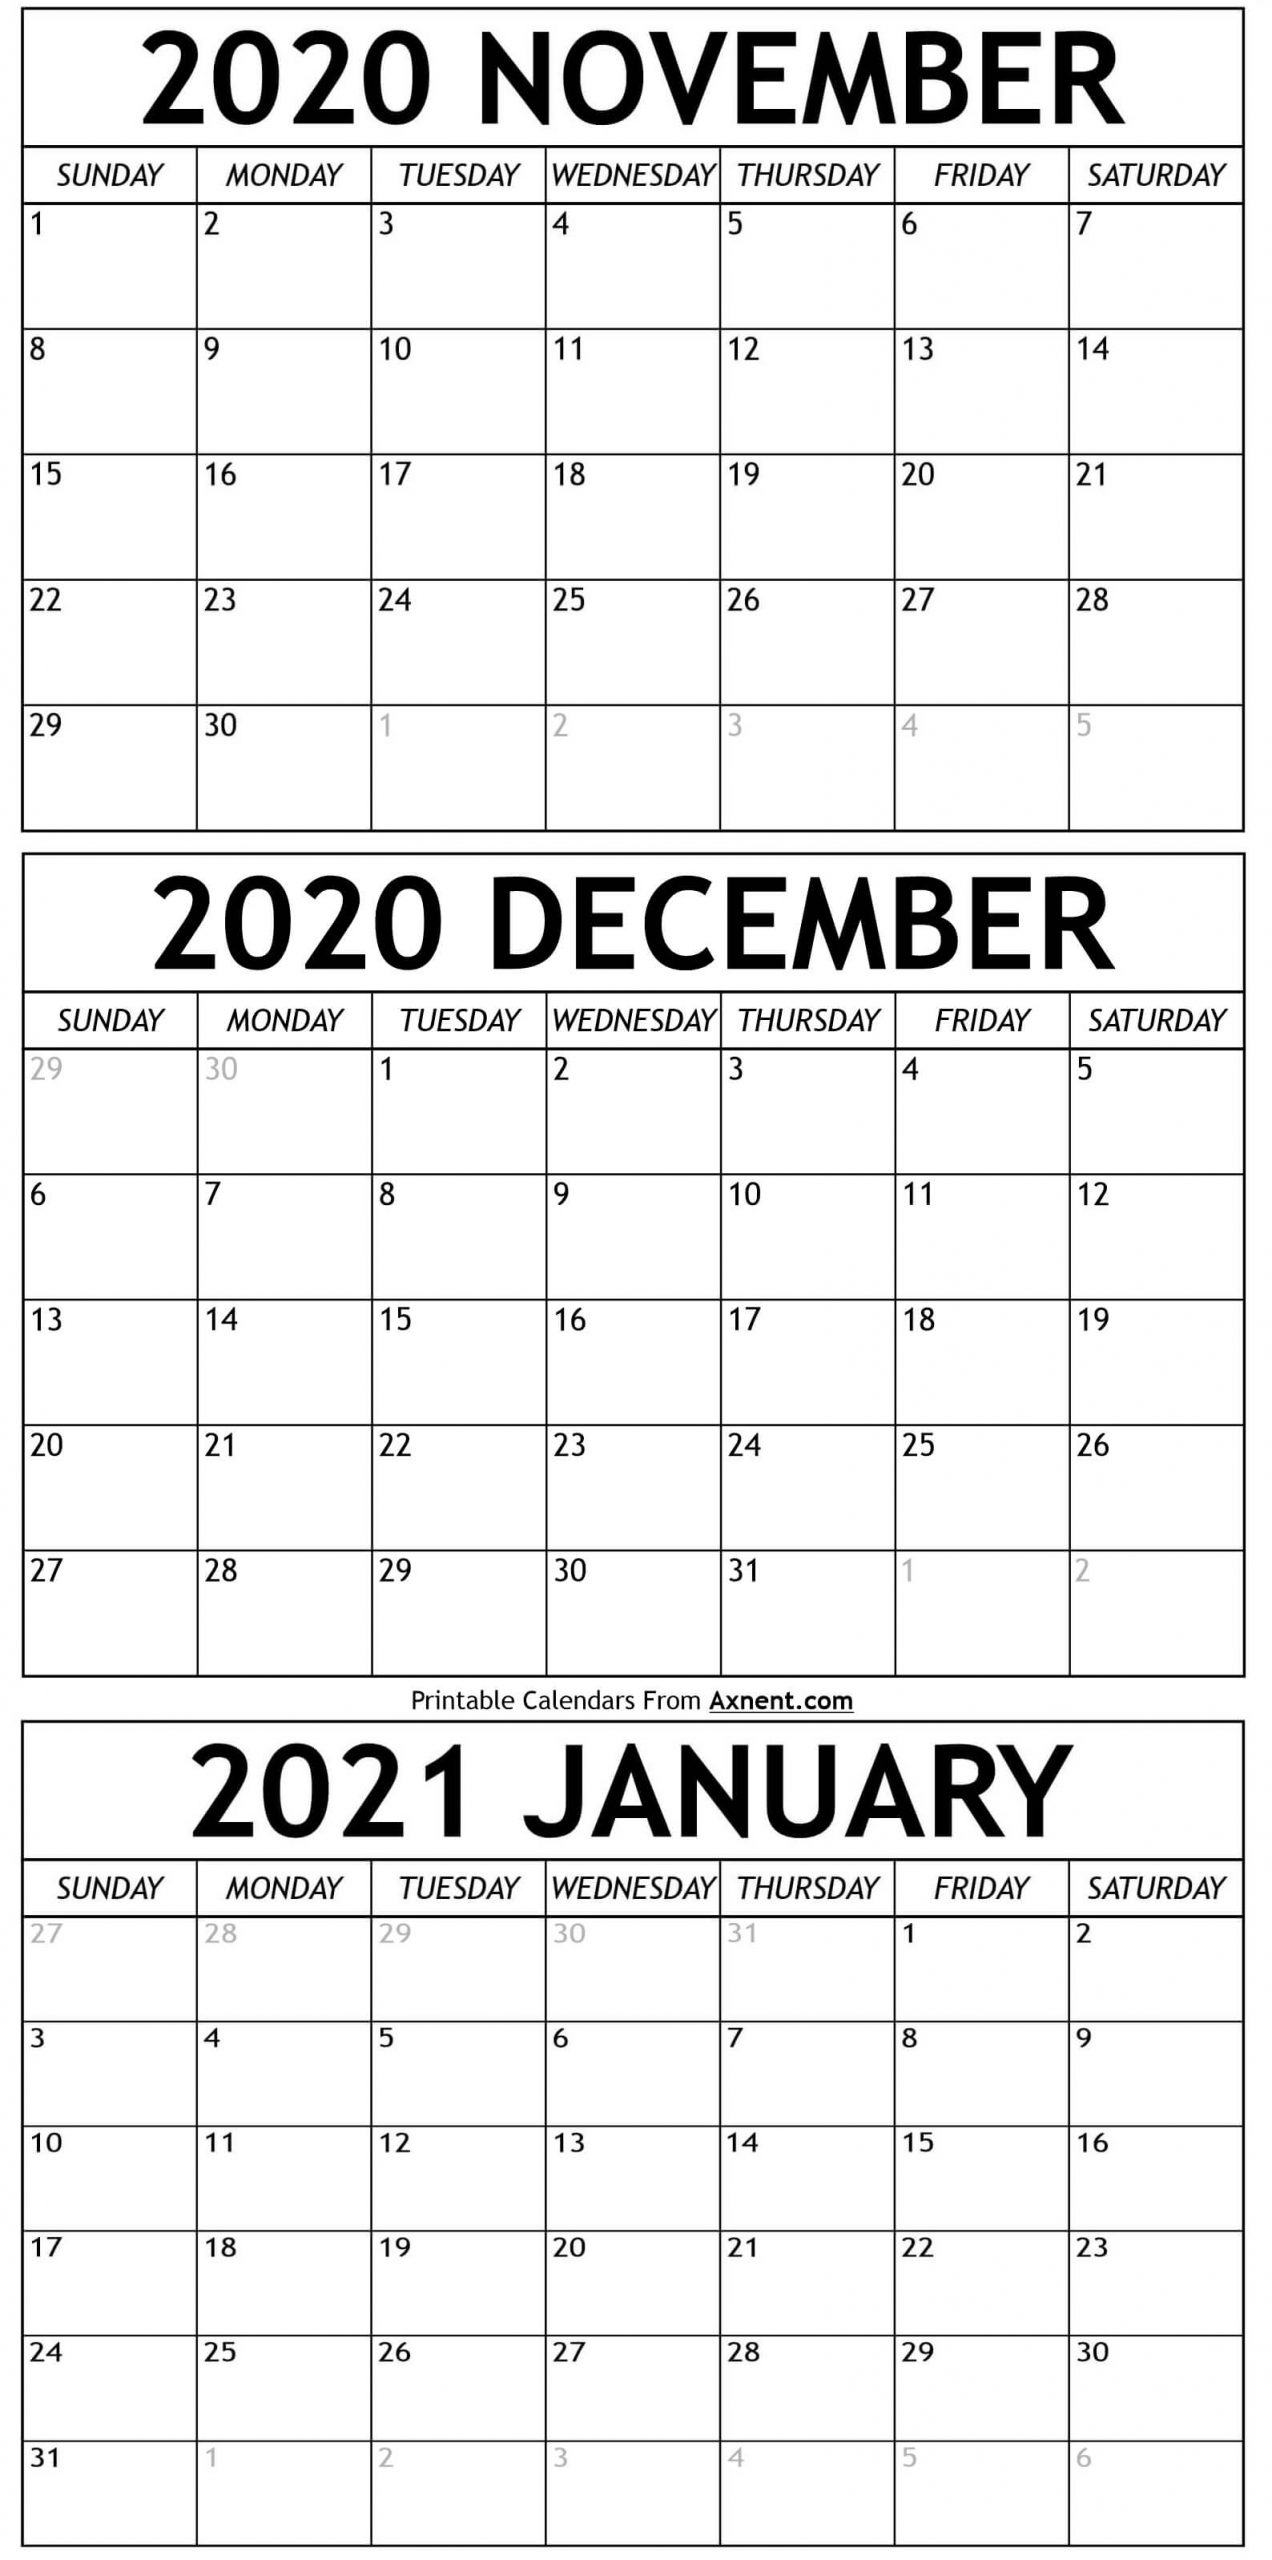 Get January Through May 2021 Calendar